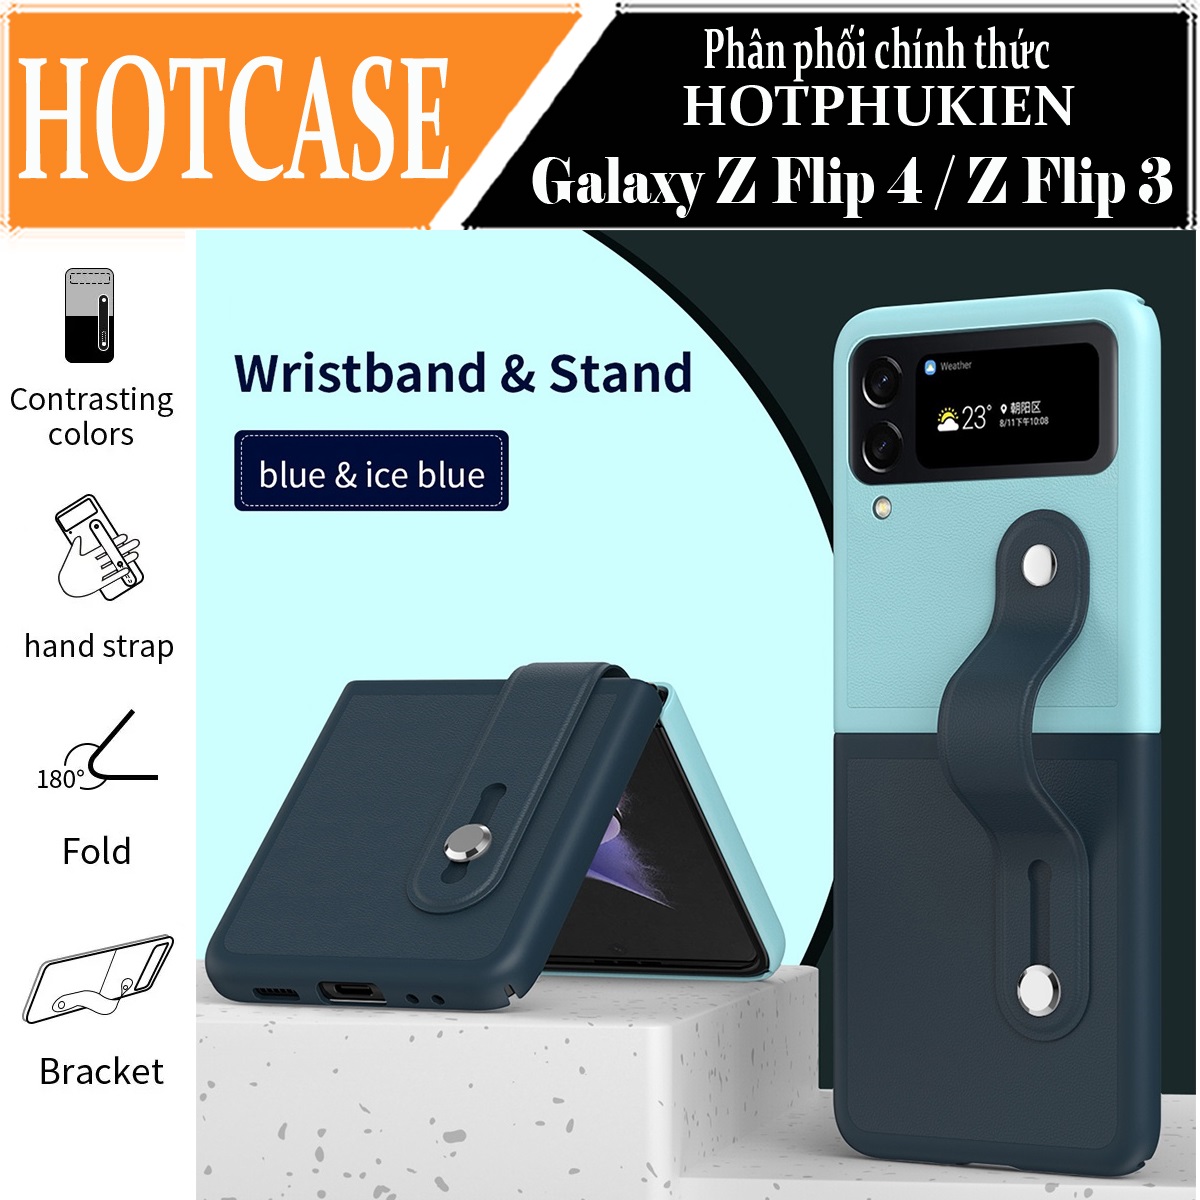 Ốp lưng đai đeo hand trap chống sốc cho Samsung Galaxy Z Flip 4 hiệu HOTCASE Wristband Stand Phone Case - chất liệu cao cấp, thiết kế thời trang sang trọng có đai đeo tay an toàn